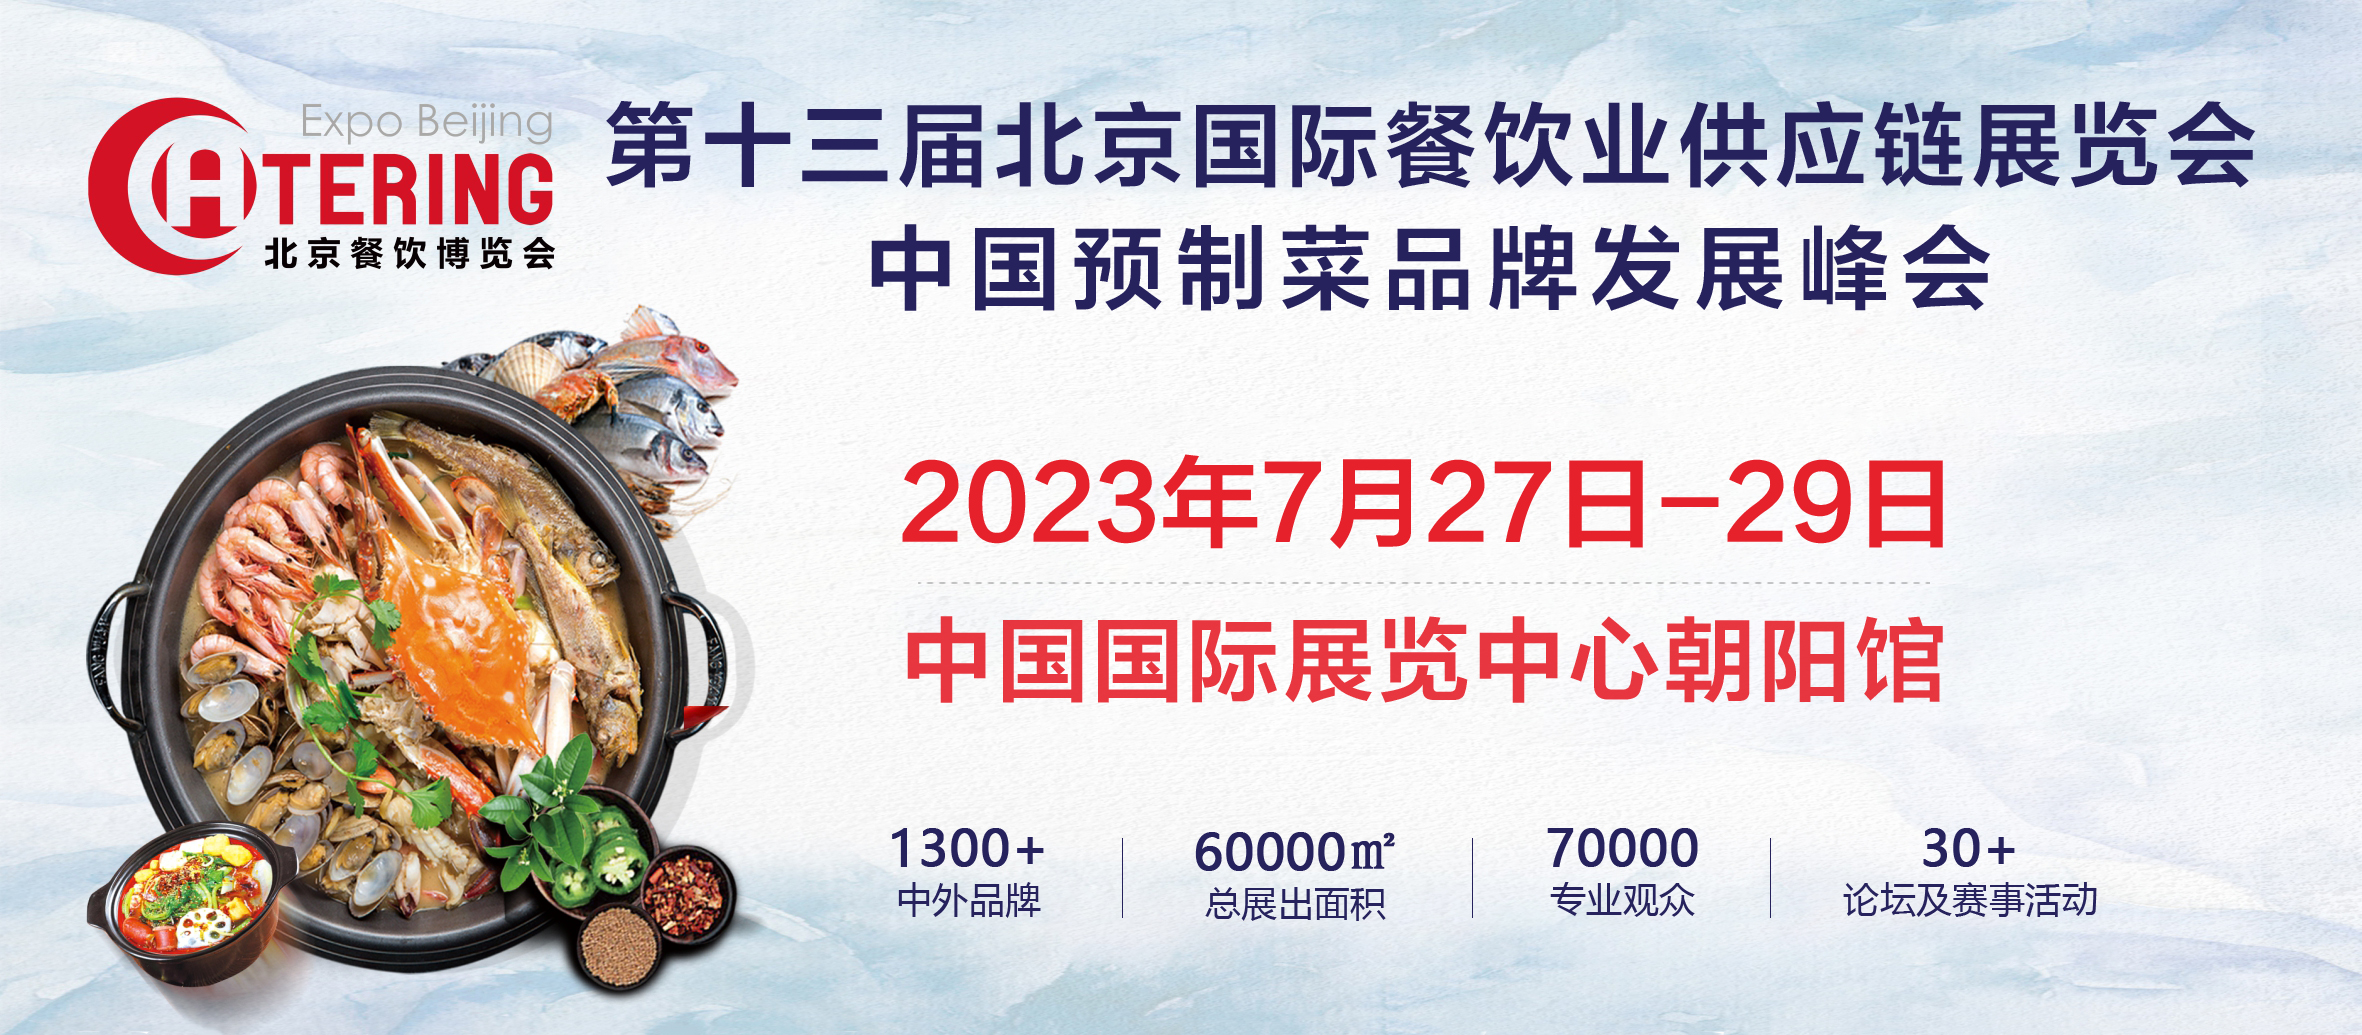 展商推介 | 四川新恒阳食品有限公司邀您参加2023北京餐博会(图1)